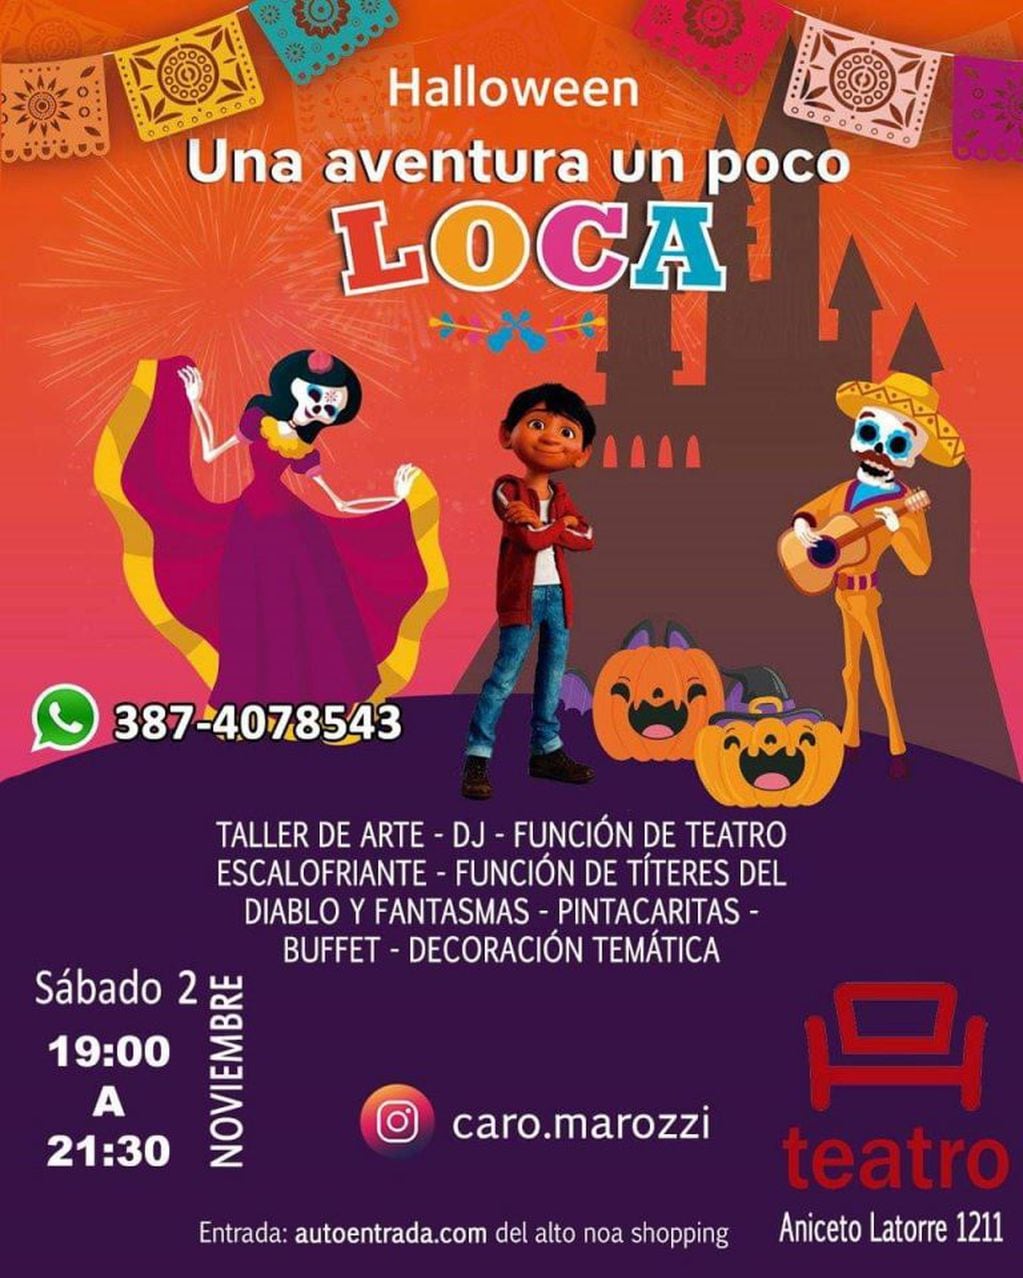 Fiesta temática Halloween en T. Teatro (Facebook El Teatrino)